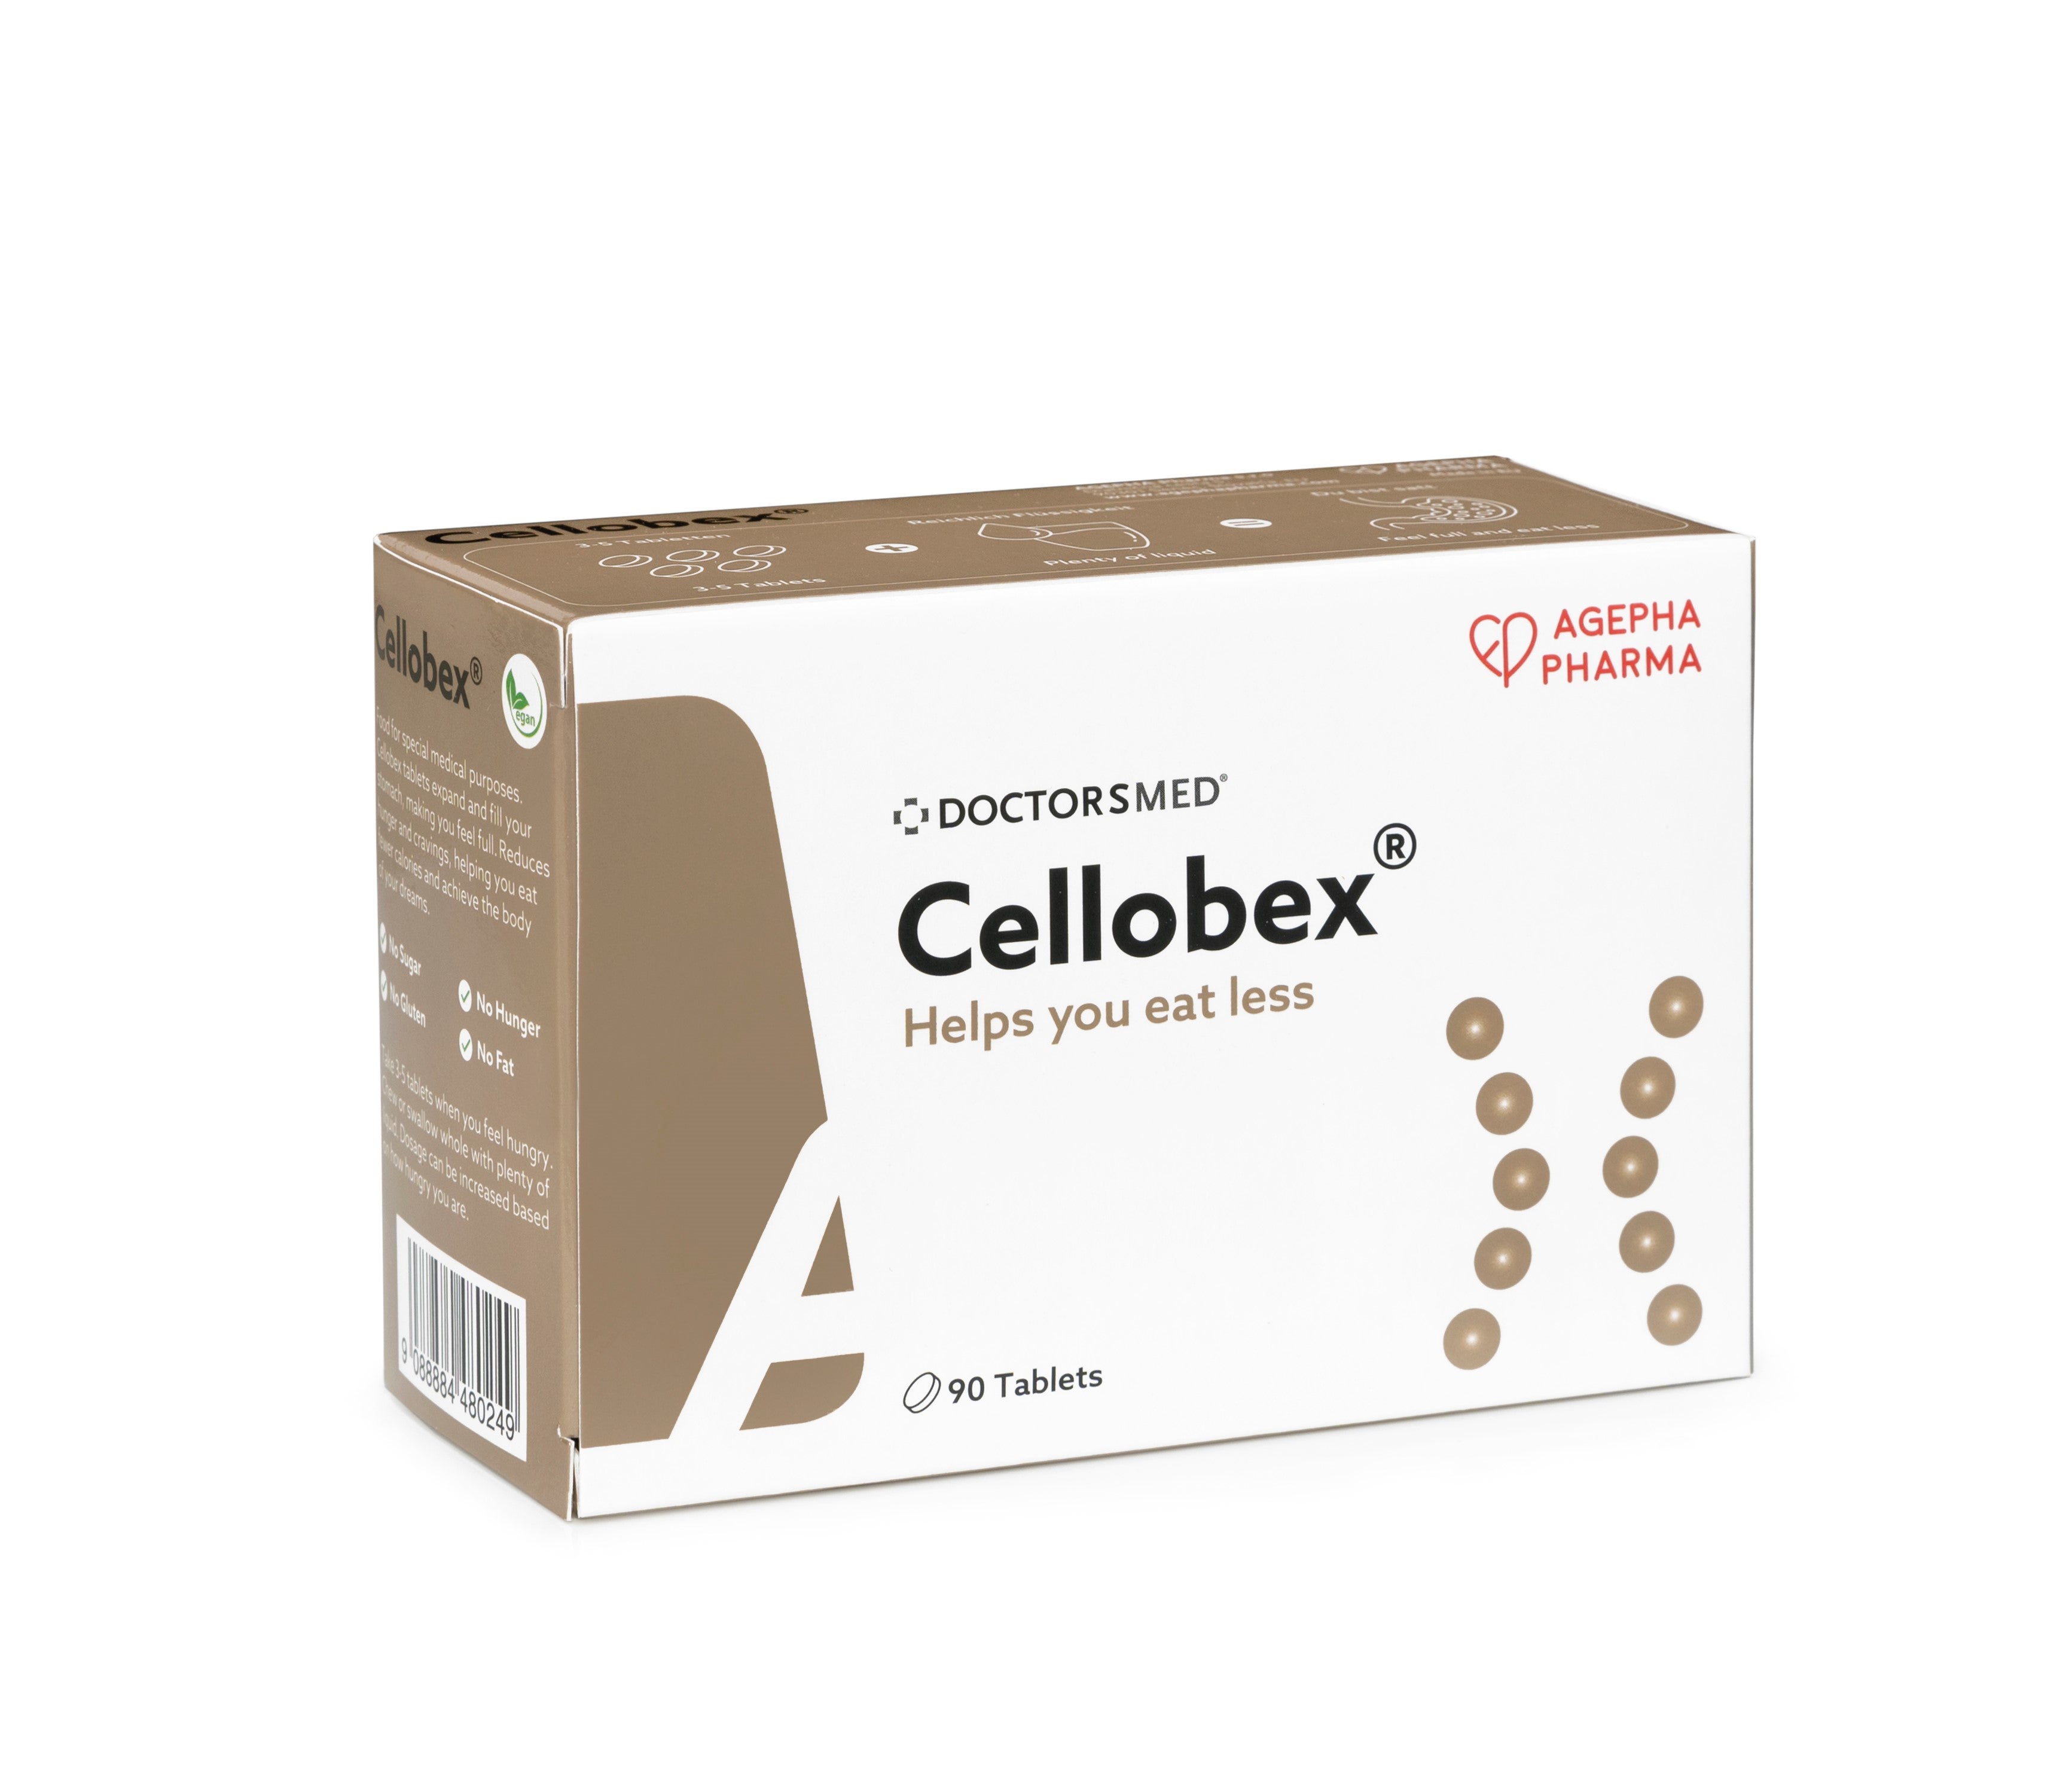 Box of Cellobex